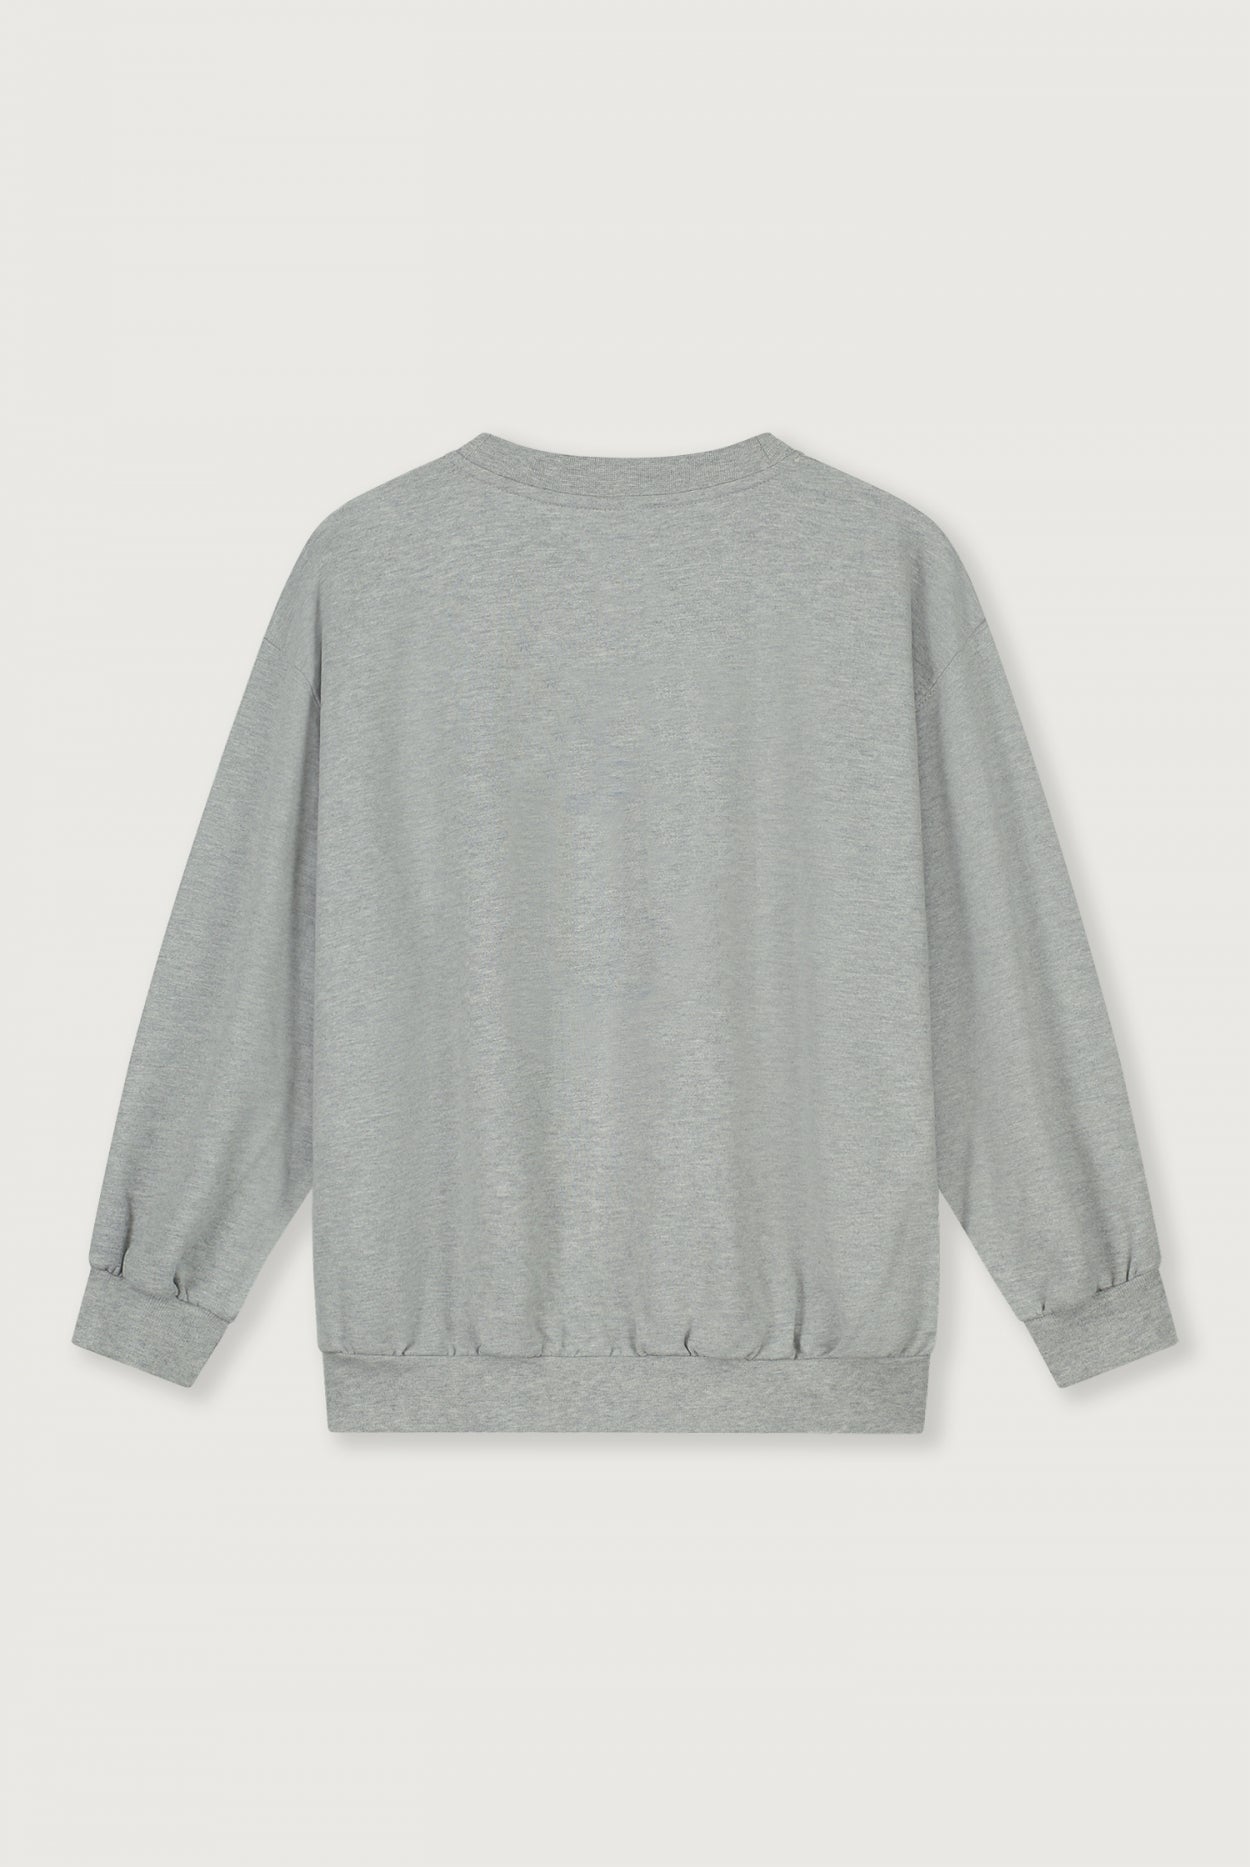 Dropped Shoulder Sweater Grey Melange